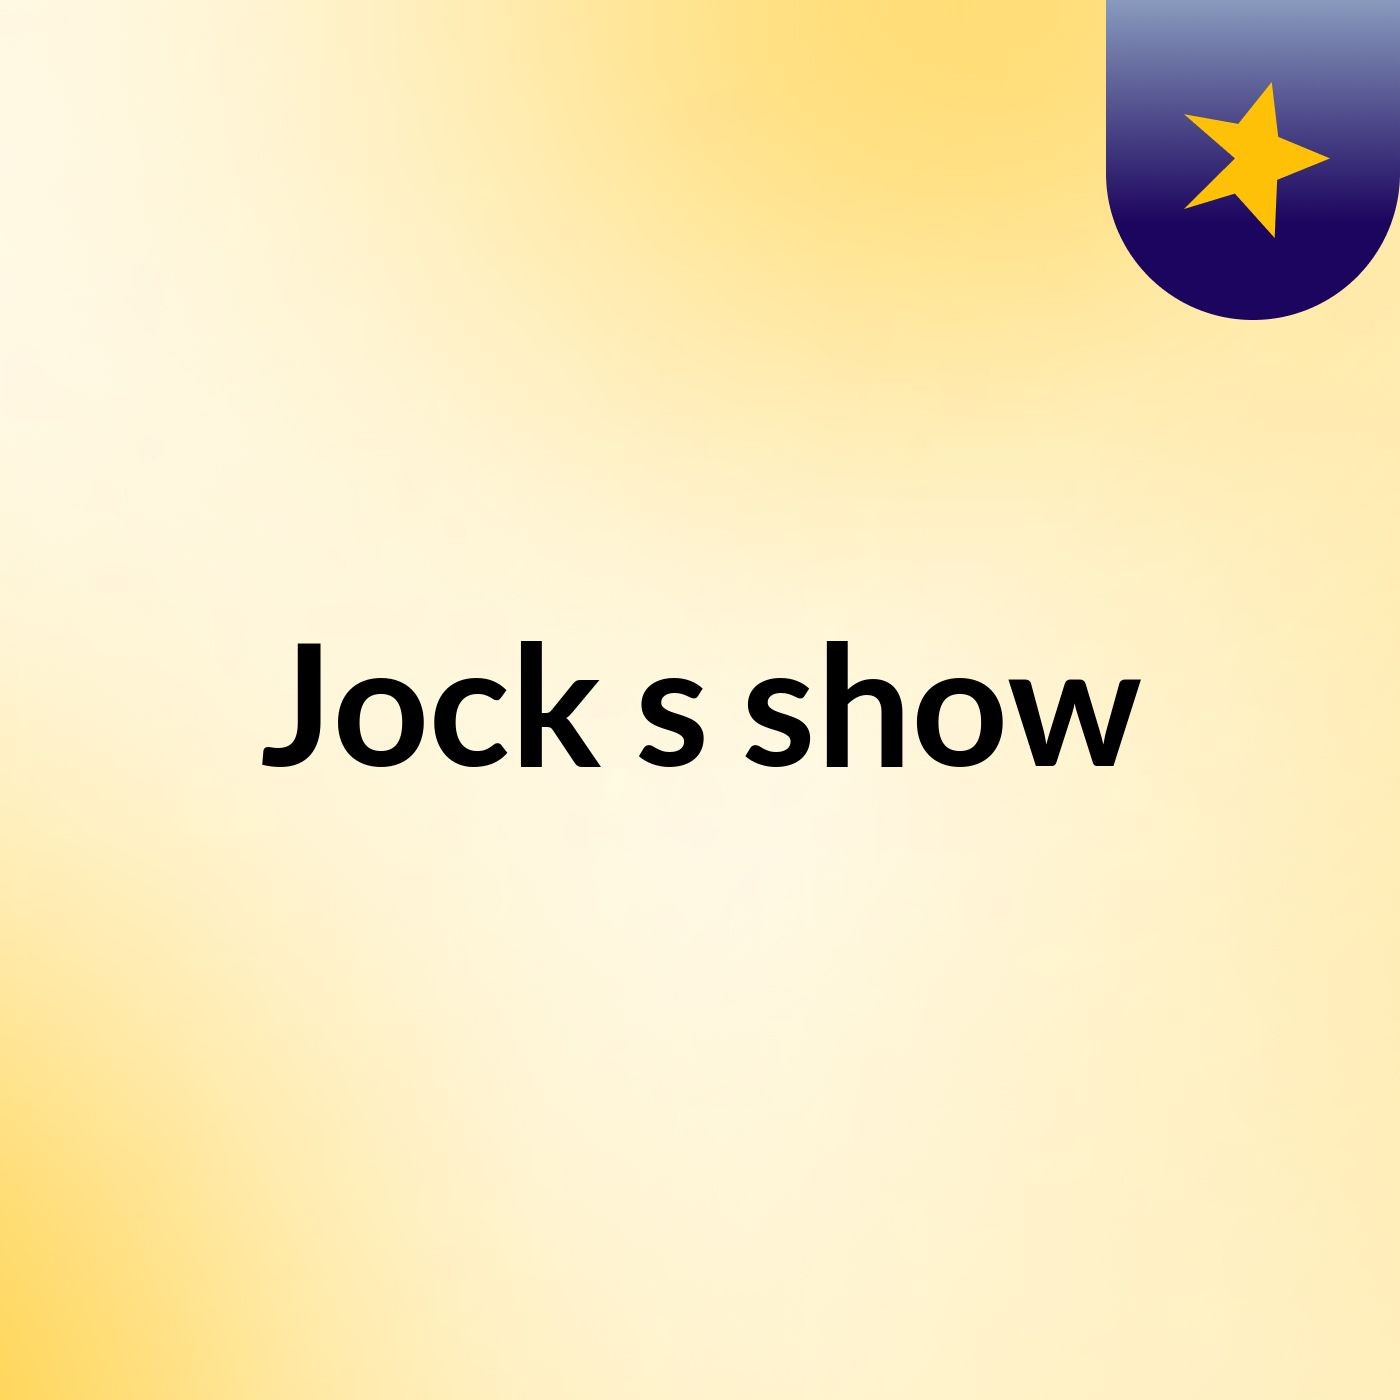 Jock's show